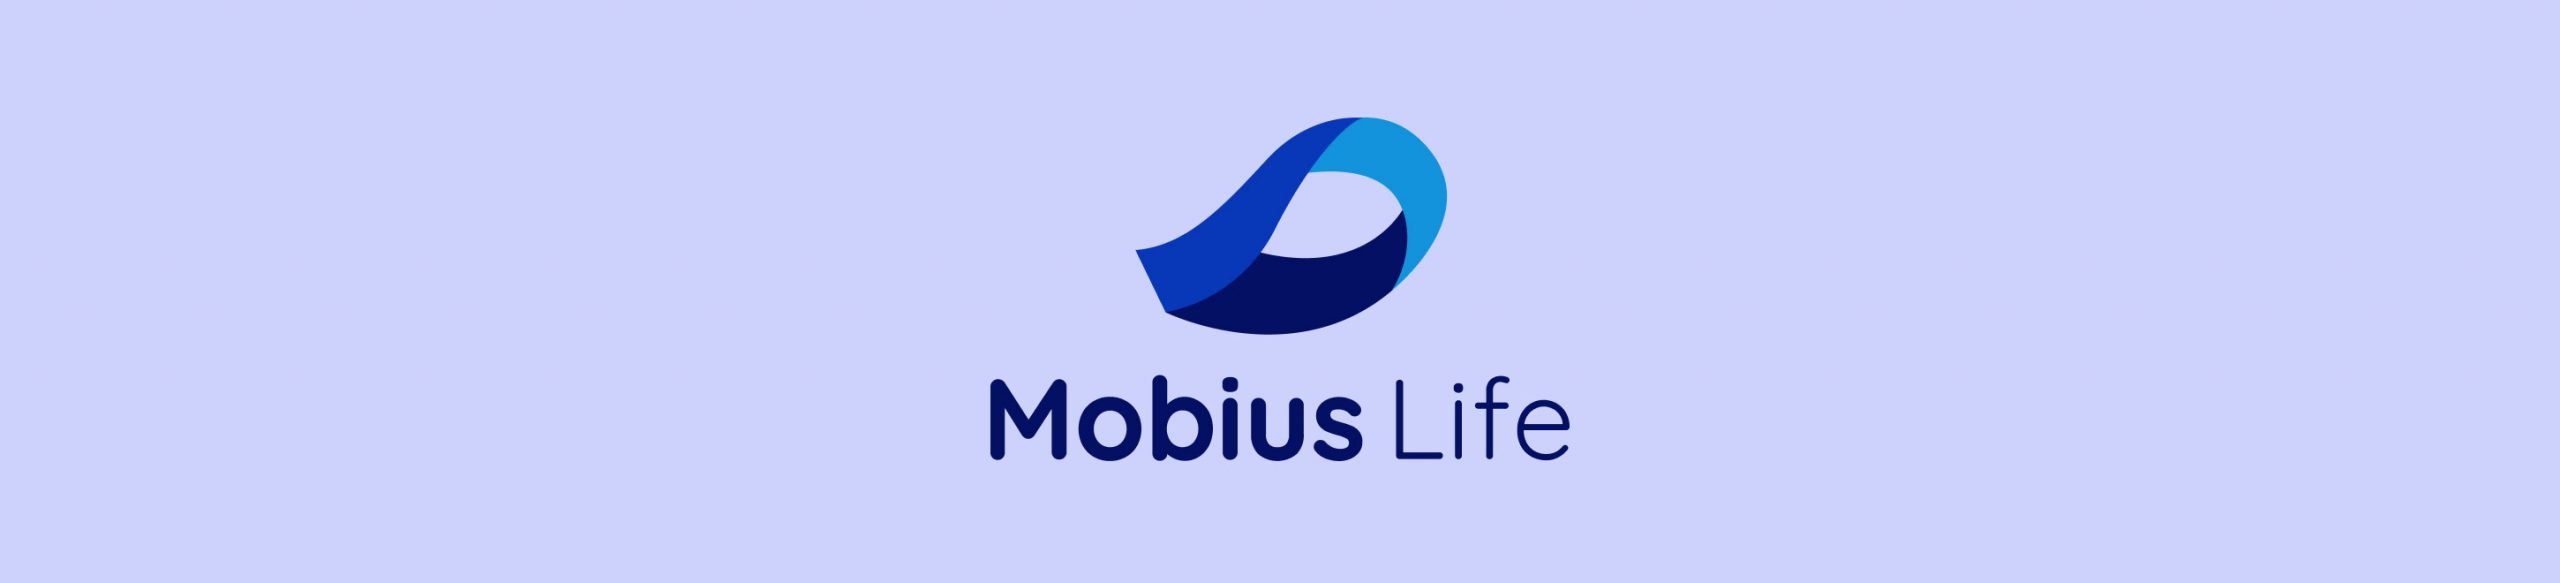 Mobius Life logo